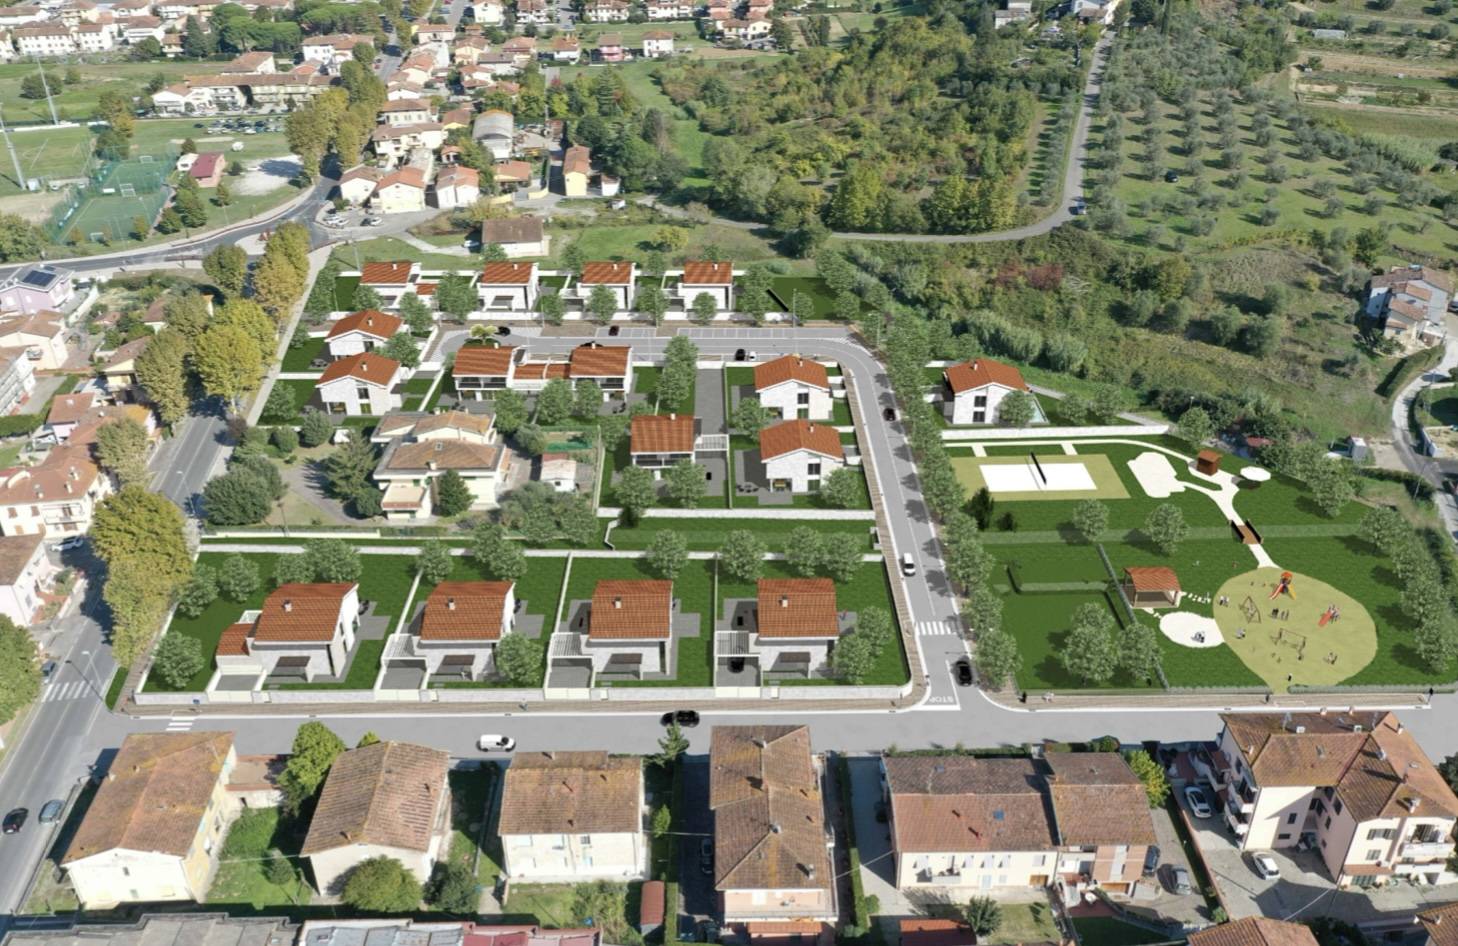 Terreno Edificabile Residenziale in vendita a San Miniato, 9999 locali, prezzo € 200.000 | PortaleAgenzieImmobiliari.it